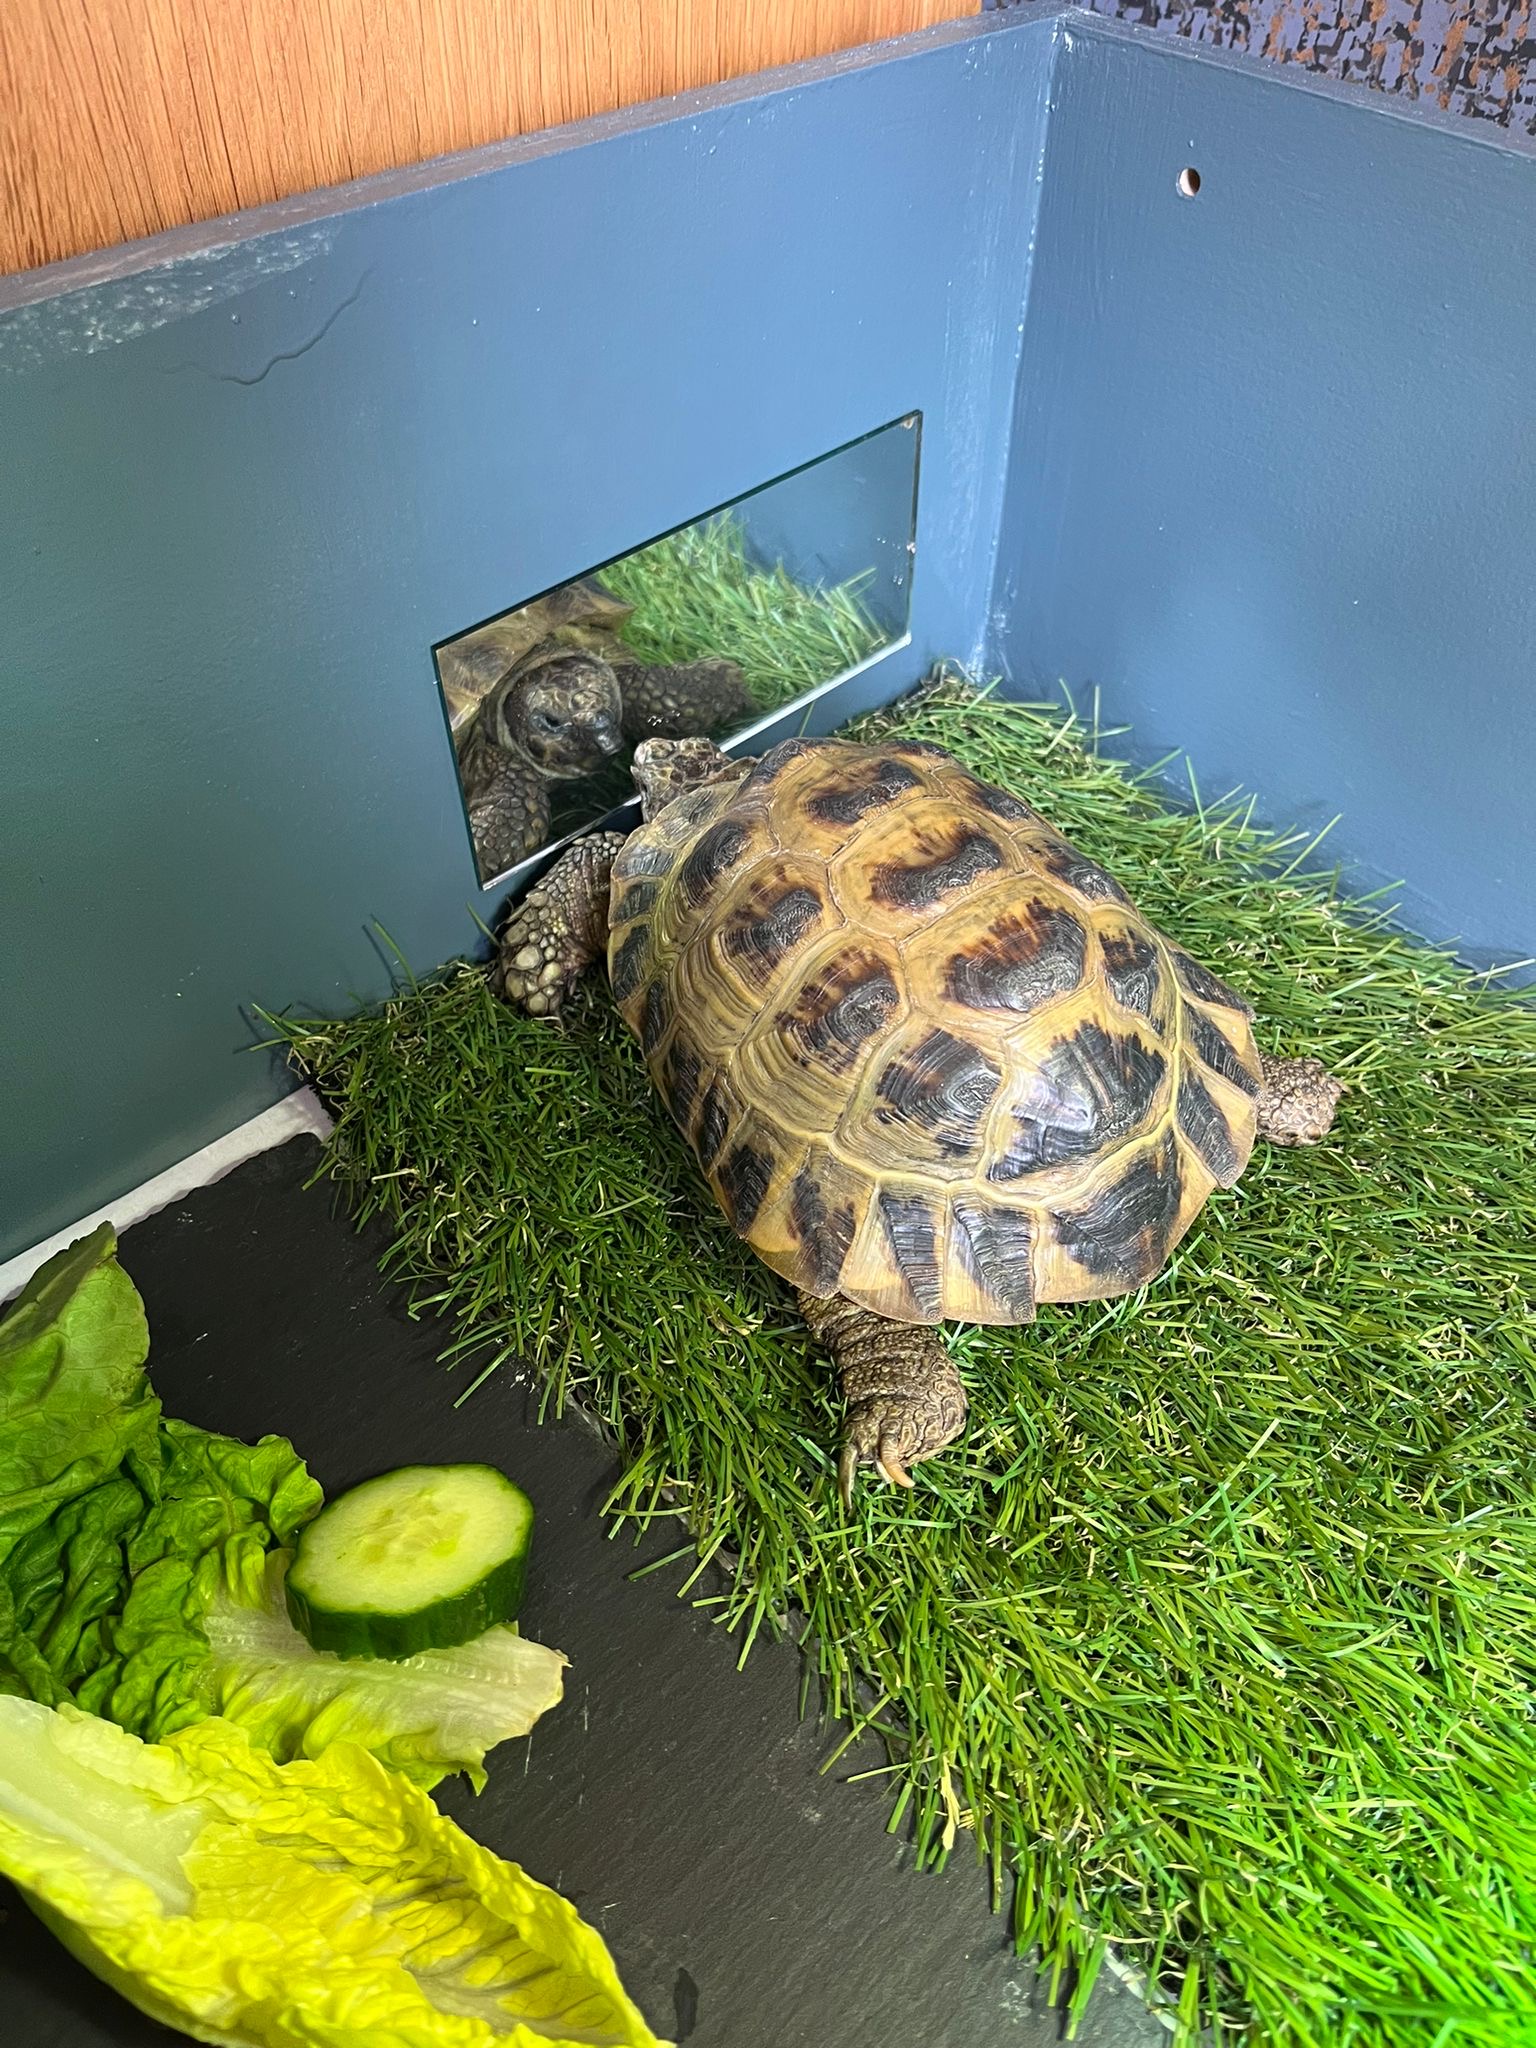 Reggie, die Horsefield-Schildkröte, hilft, das Herz seiner neuen Besitzerin zu heilen, nachdem ihre Schwester im März verstorben ist